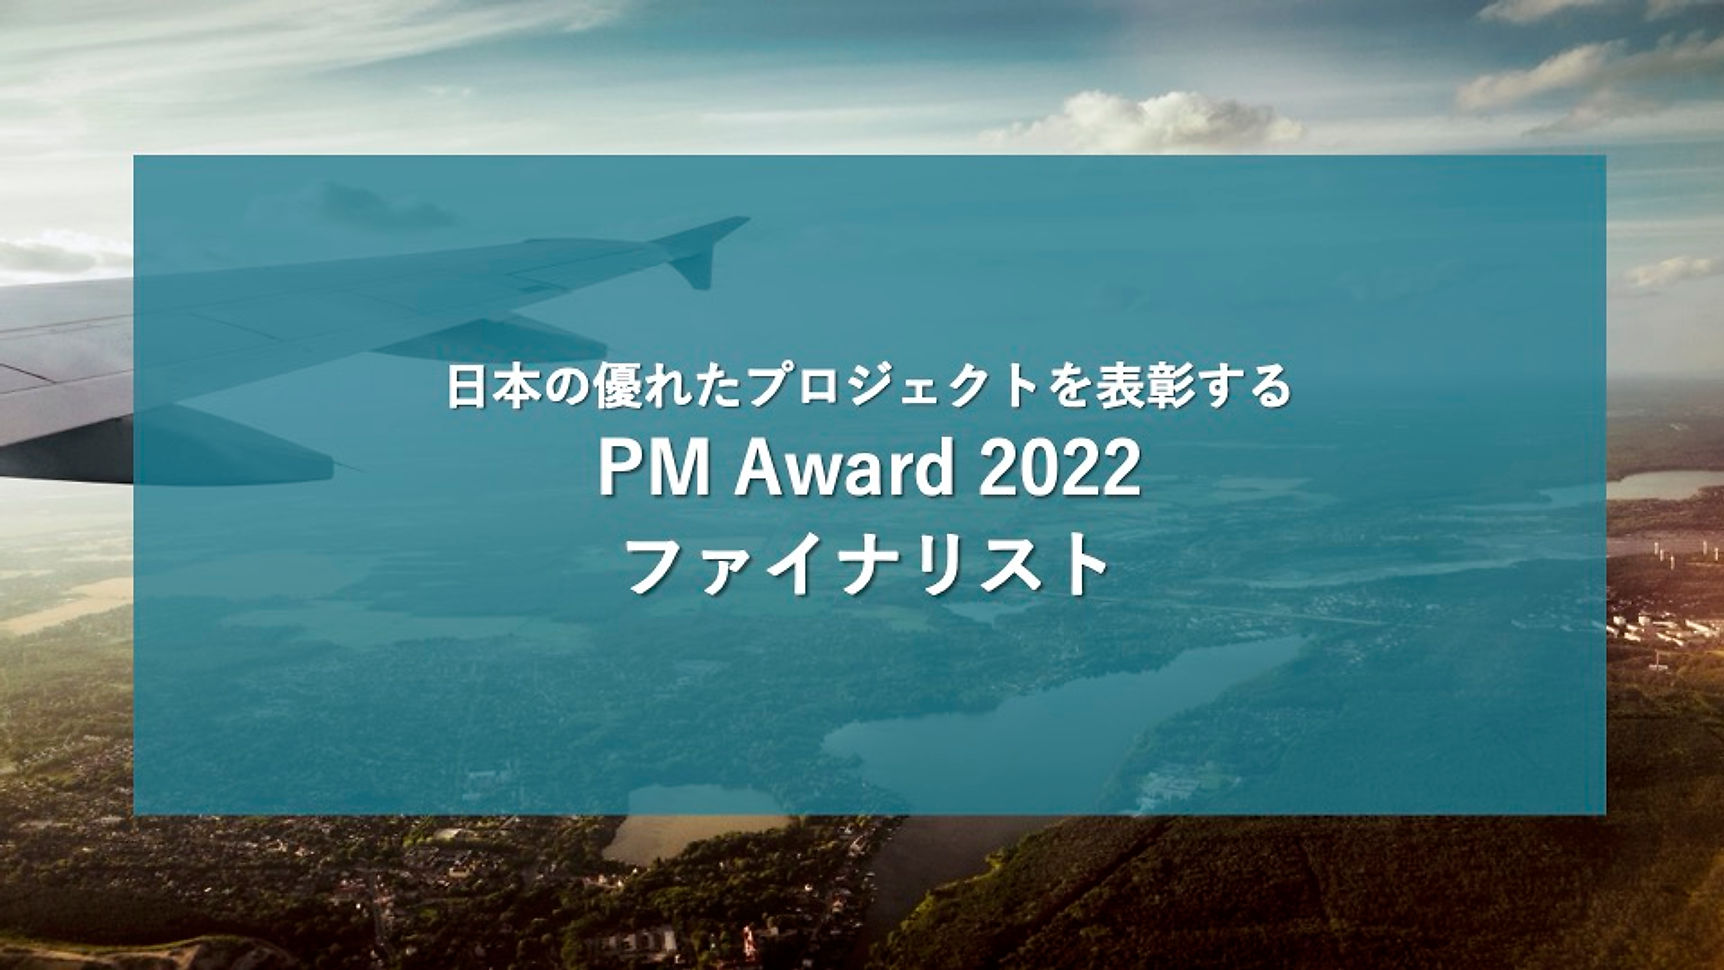 PM Award 2022 Finalist